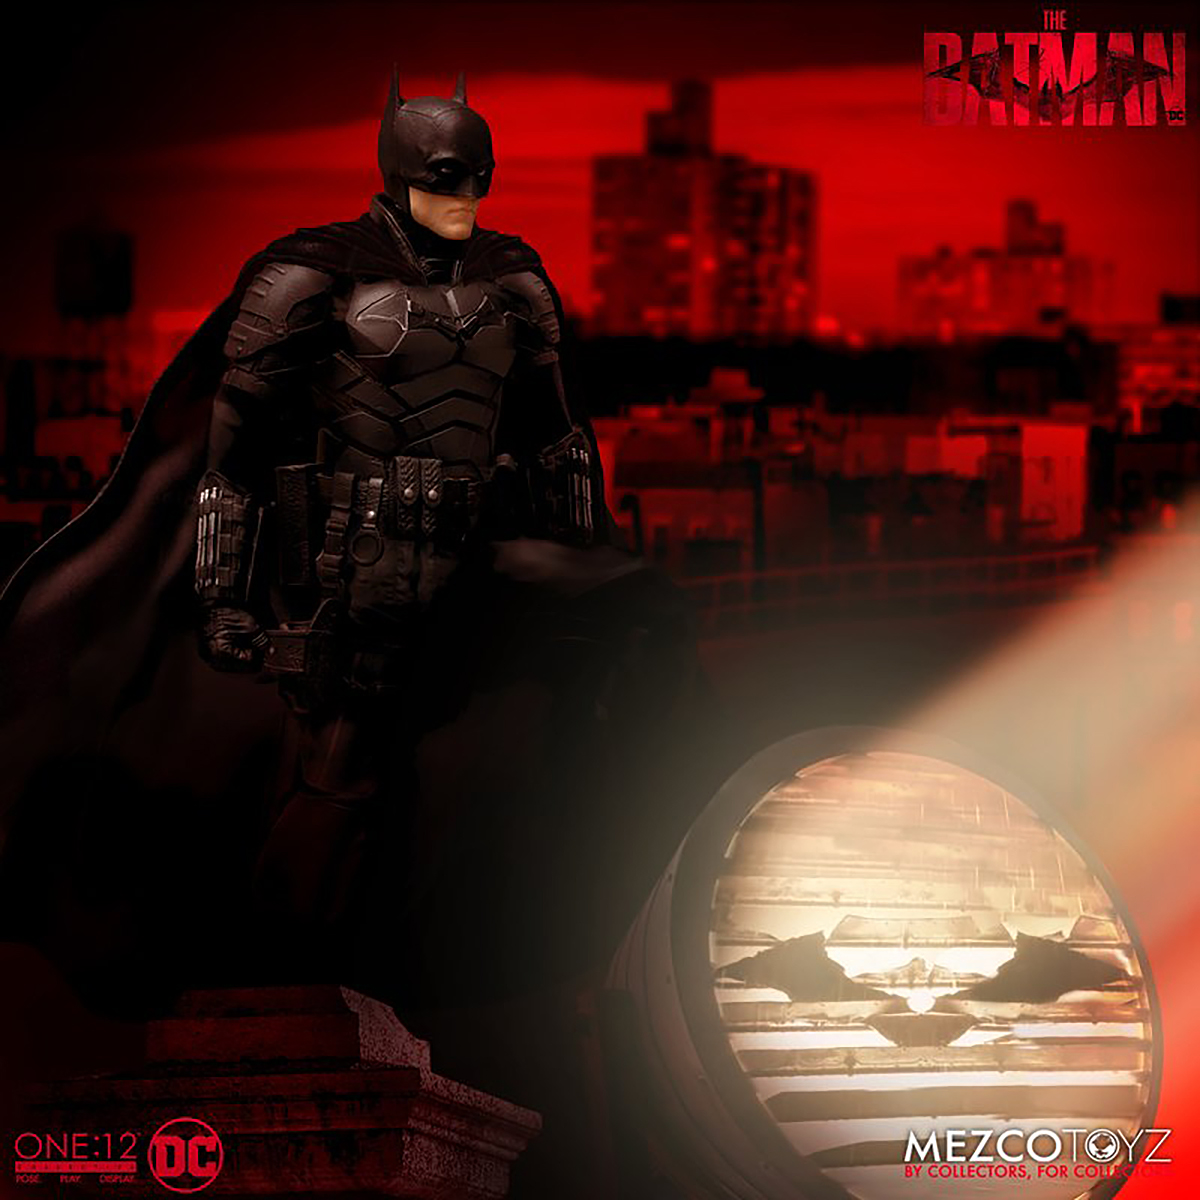 MEZCO TOYS The Batman One:12 Actionfigur Actionfigur